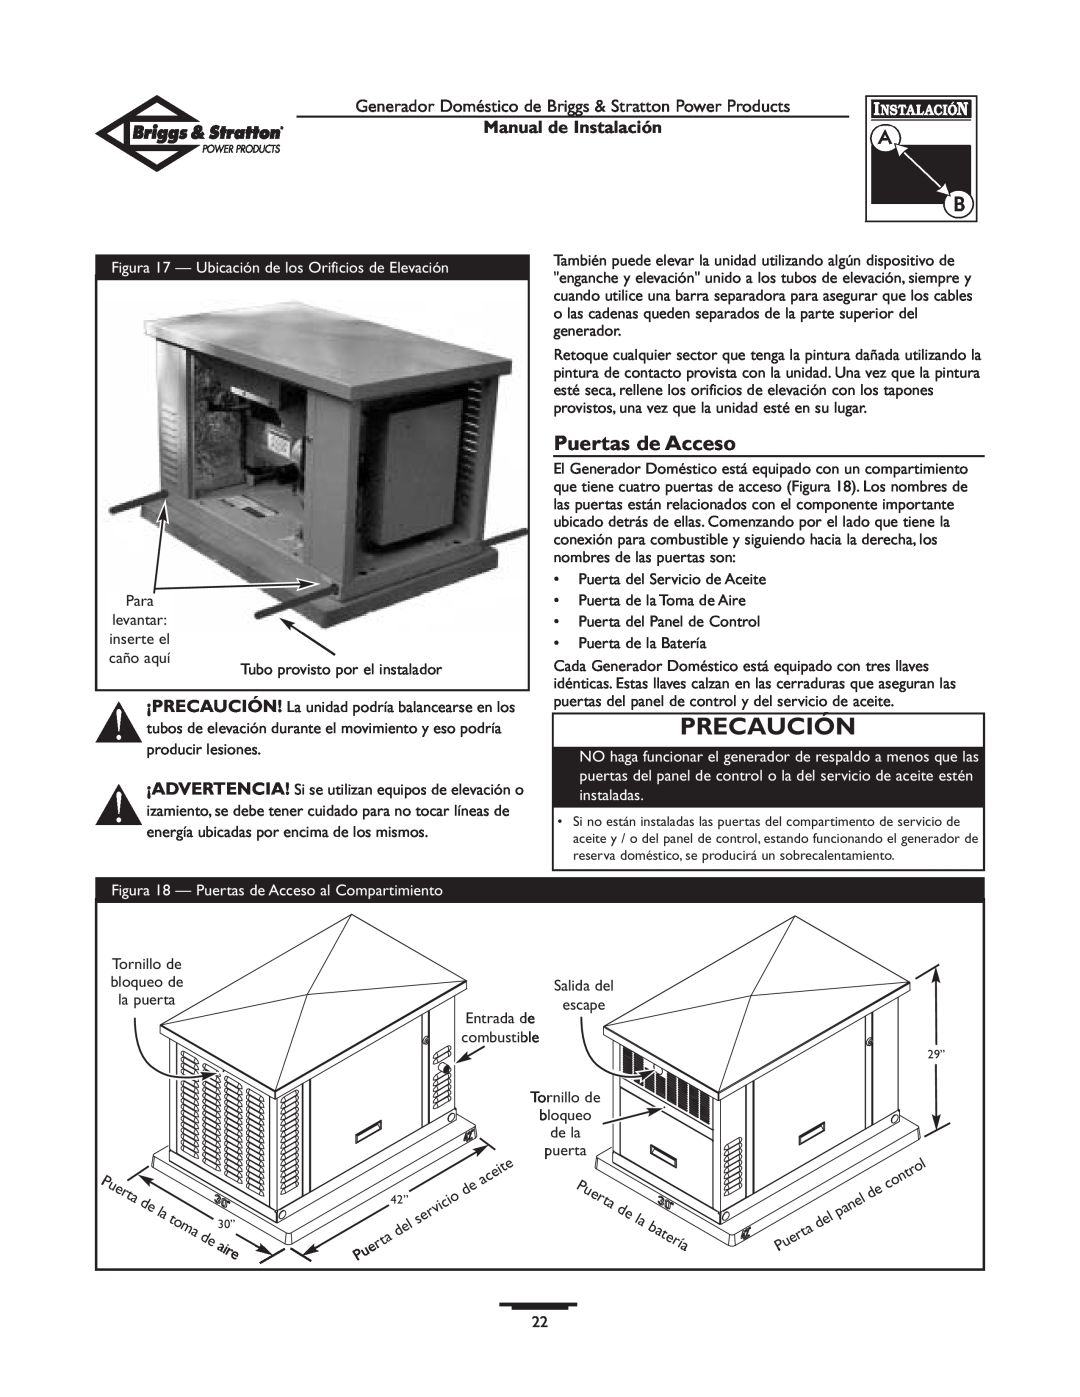 Briggs & Stratton 01938-0 manual Puertas de Acceso, batería, aire, Precaución, Manual de Instalación 